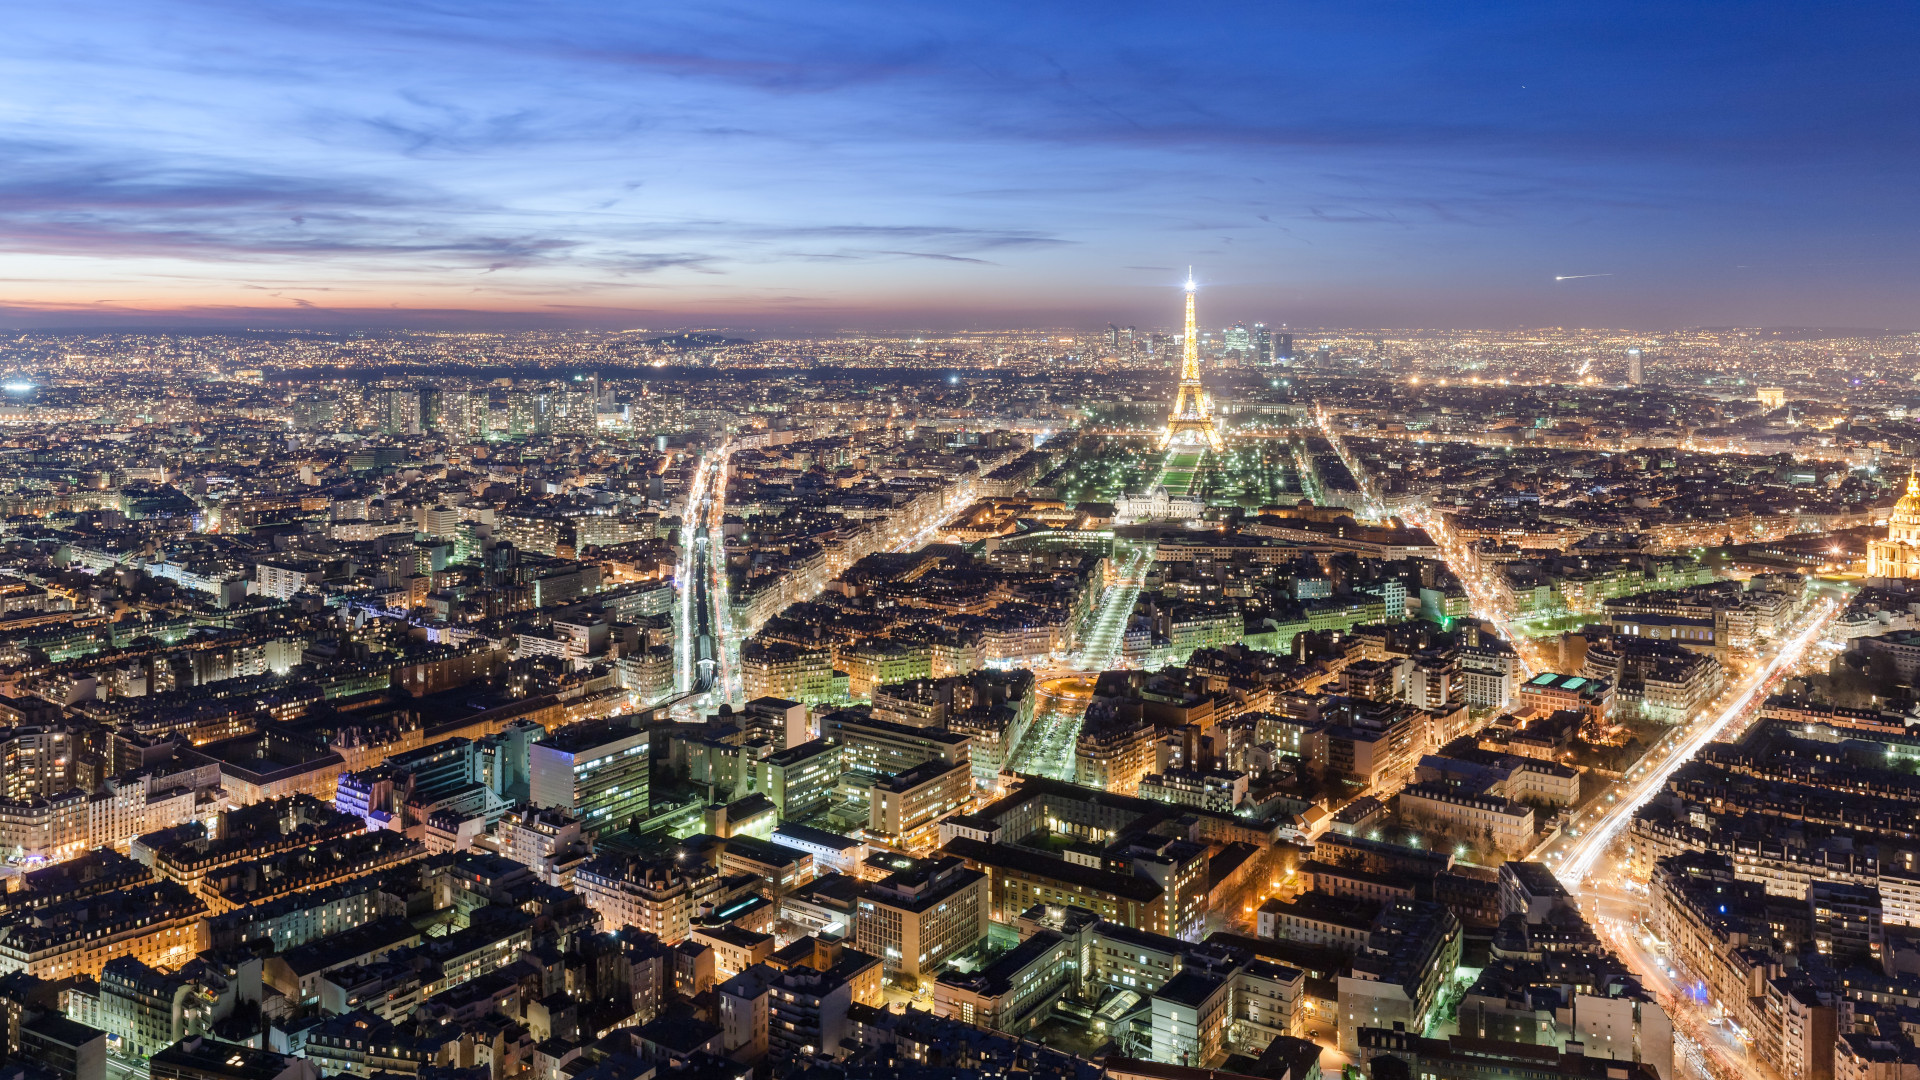 Widok z lotu ptaka na Paryż o zmroku. W jednej trzeciej obrazu widoczna linia horyzontu z wąskim fragmentem czerwonego nieba rozświetlonymi ostatnimi promieniami słońca. Wyraźnie widoczne światła domów oraz latarni wzdłuż ulic, a także Wieża Eiffla.